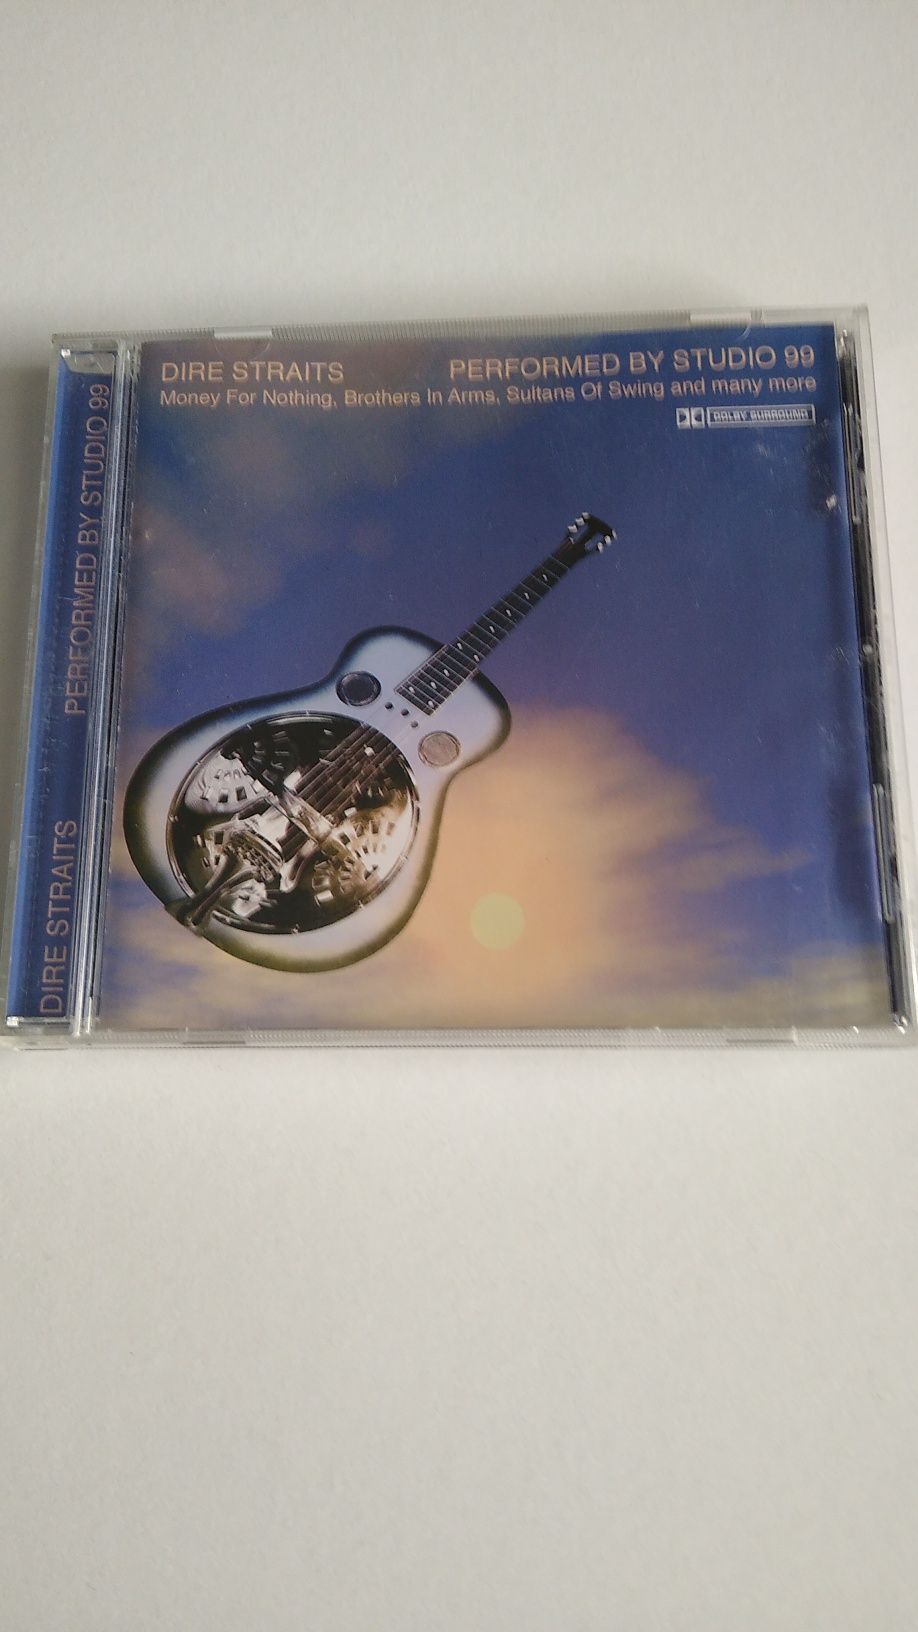 Płyta CD z muzyką DIRE STRAITS - Performed by studio 99 (przeróbka).